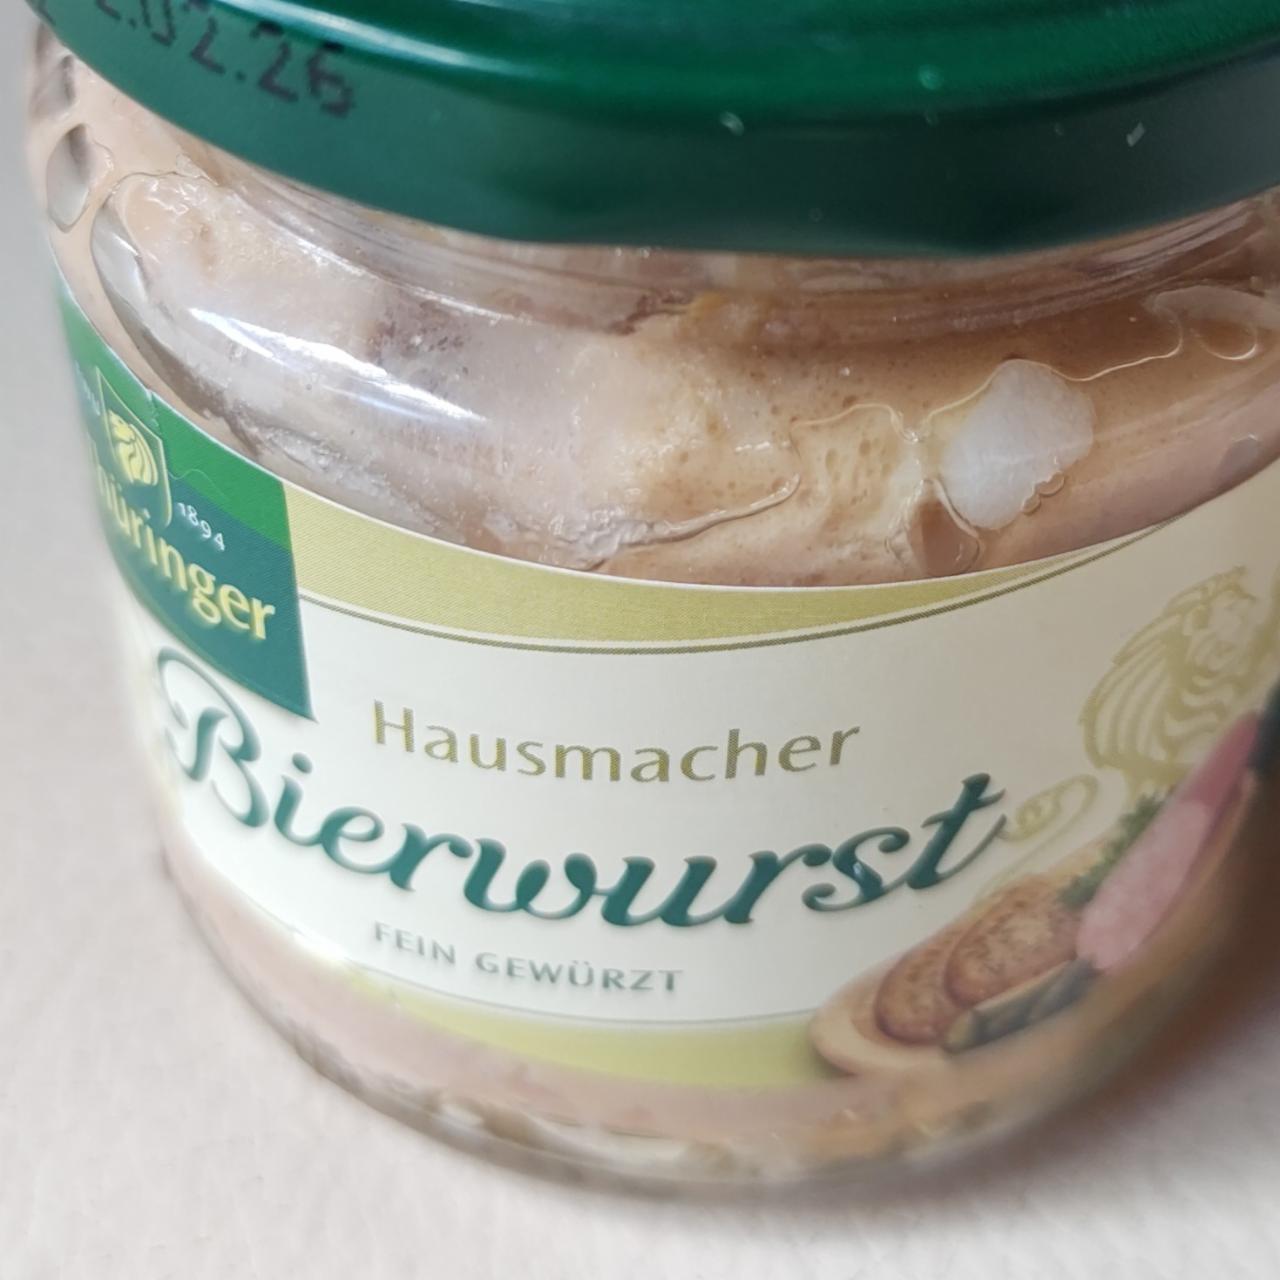 Fotografie - hausmacher bierwurst Thüringer